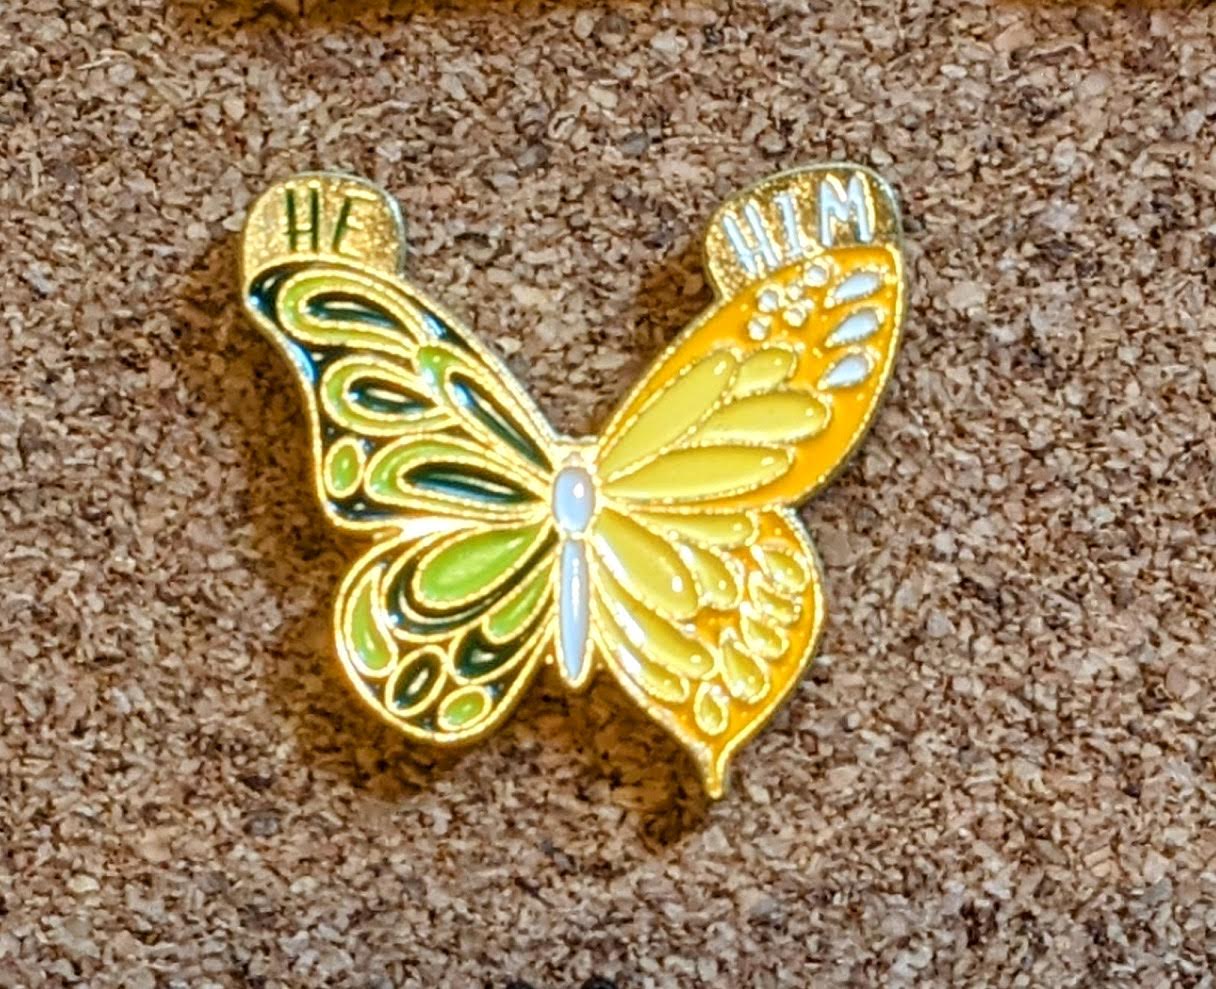 Split Butterfly Pronoun Pins